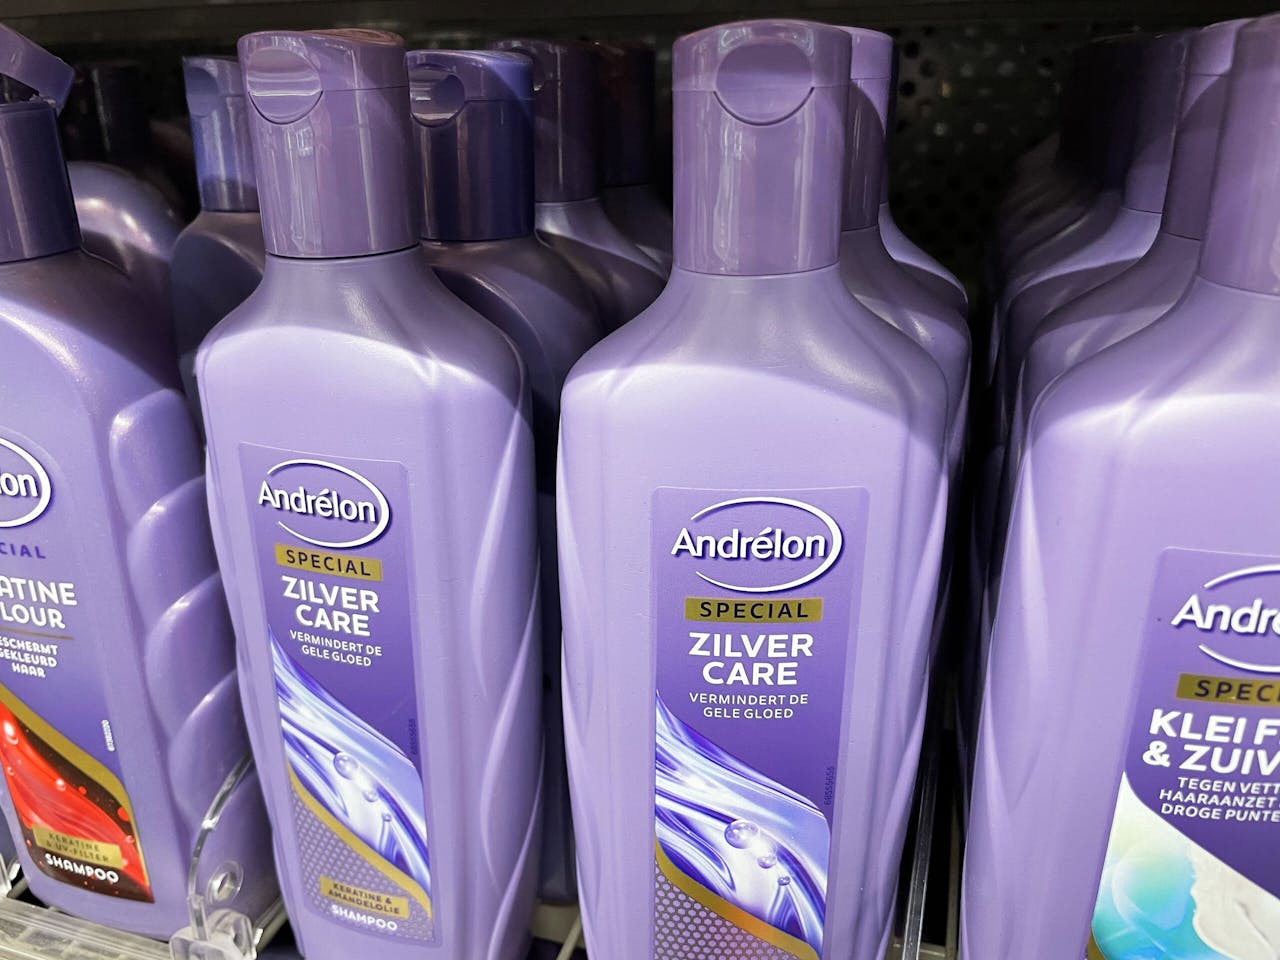 Andrélon shampoo van Unilever in het winkelschap. De droogshampoo van dit merk noemde Unilever in 2012 een duurzaam succes, omdat hiermee het aantal douchebeurten omlaag ging.